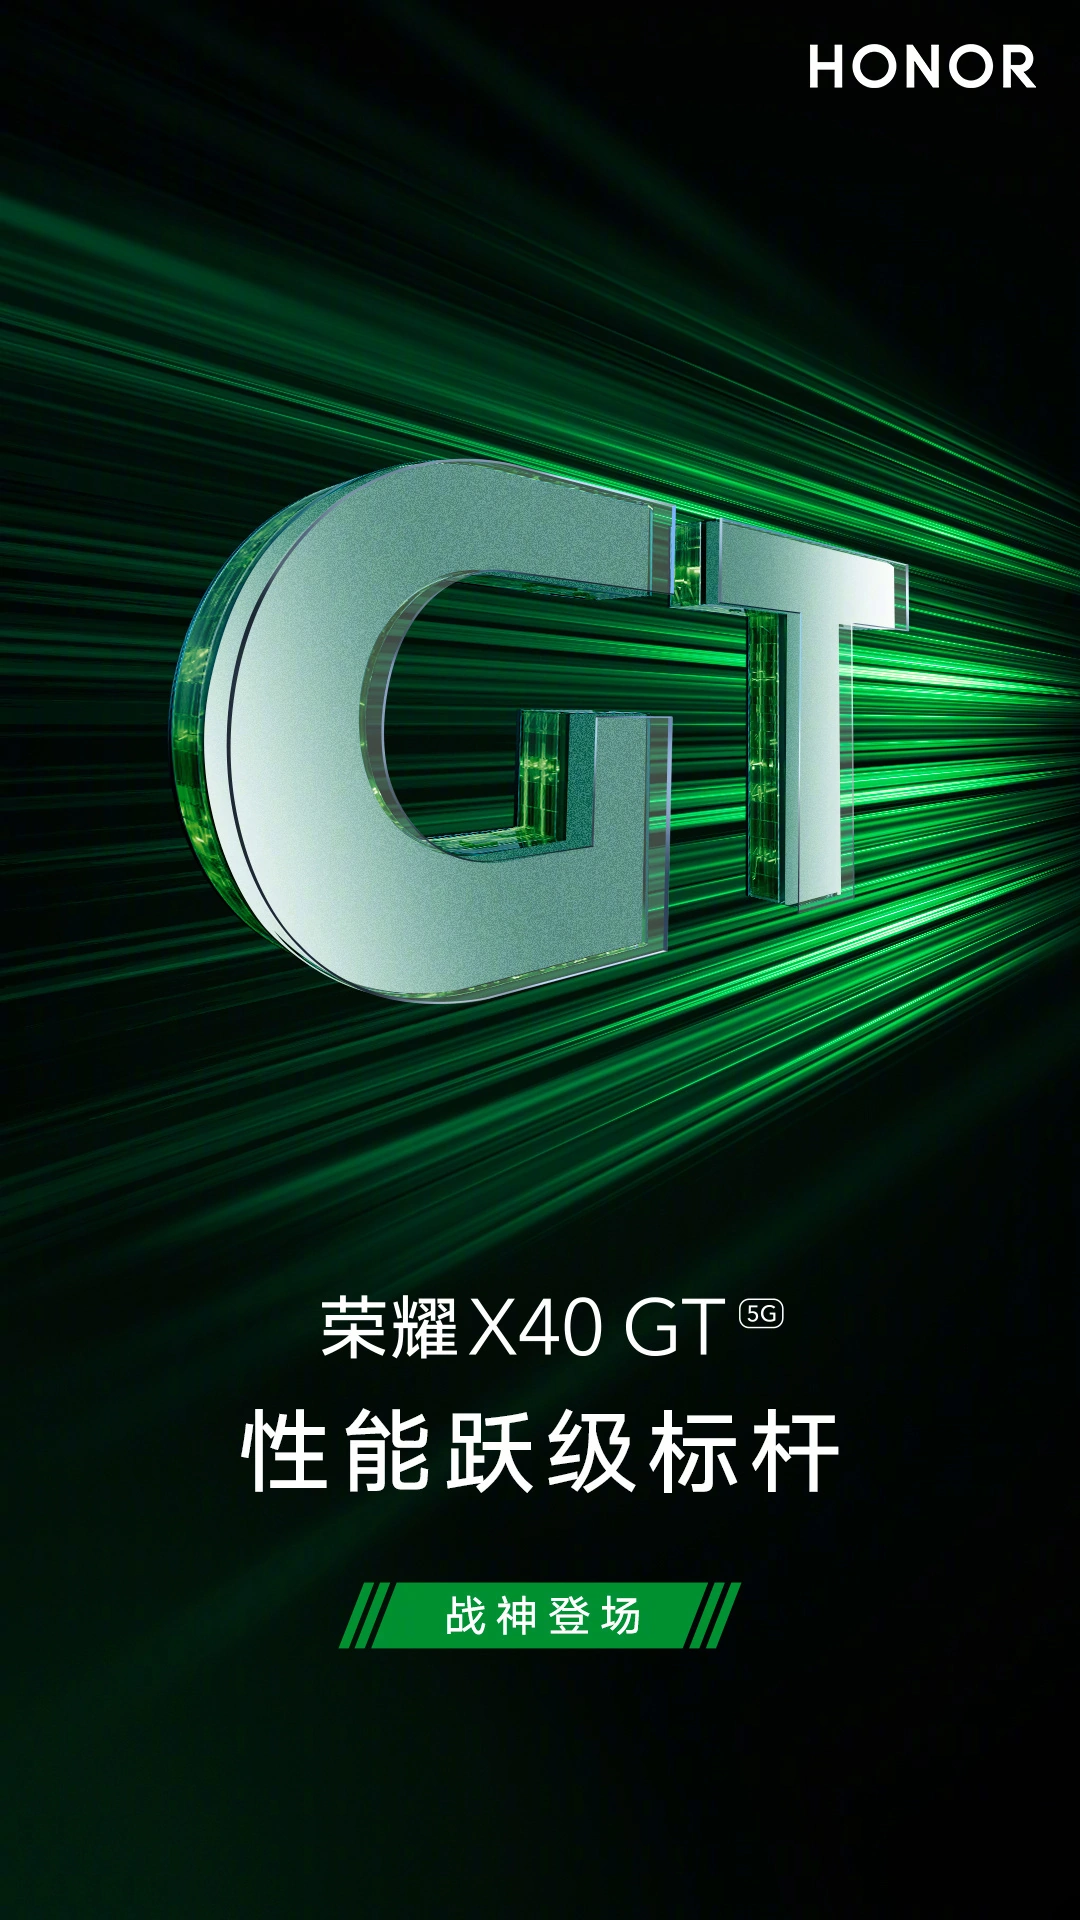 榮耀X40 GT 5G